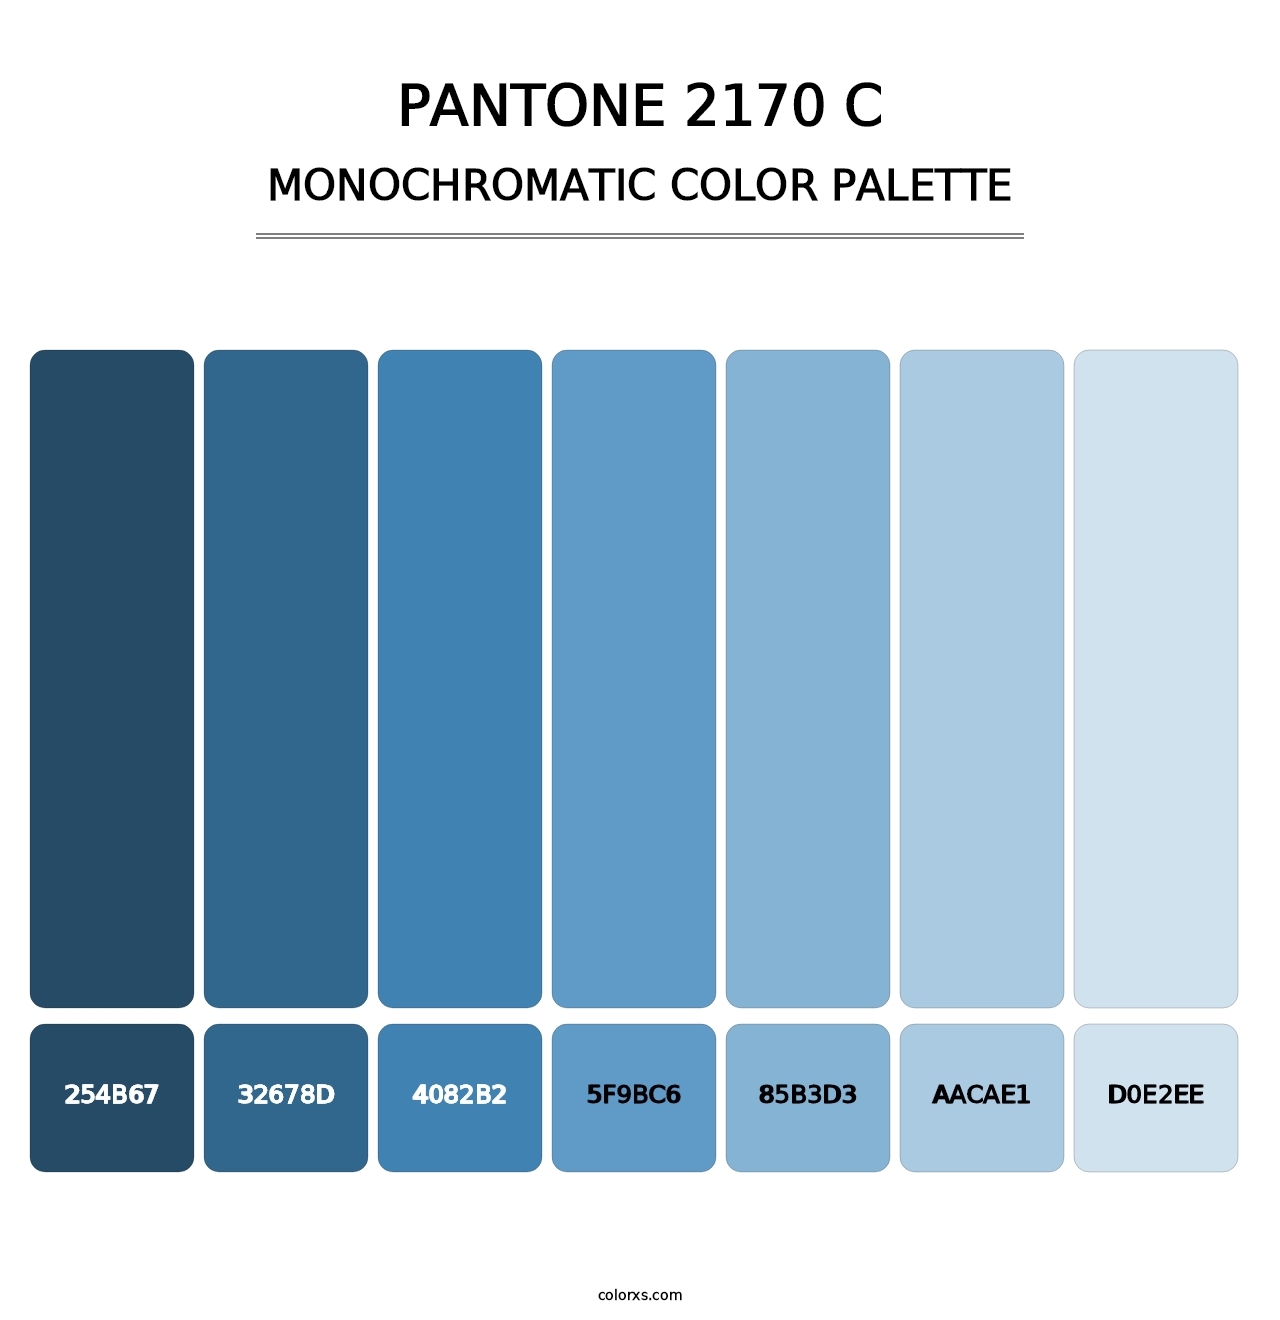 PANTONE 2170 C - Monochromatic Color Palette